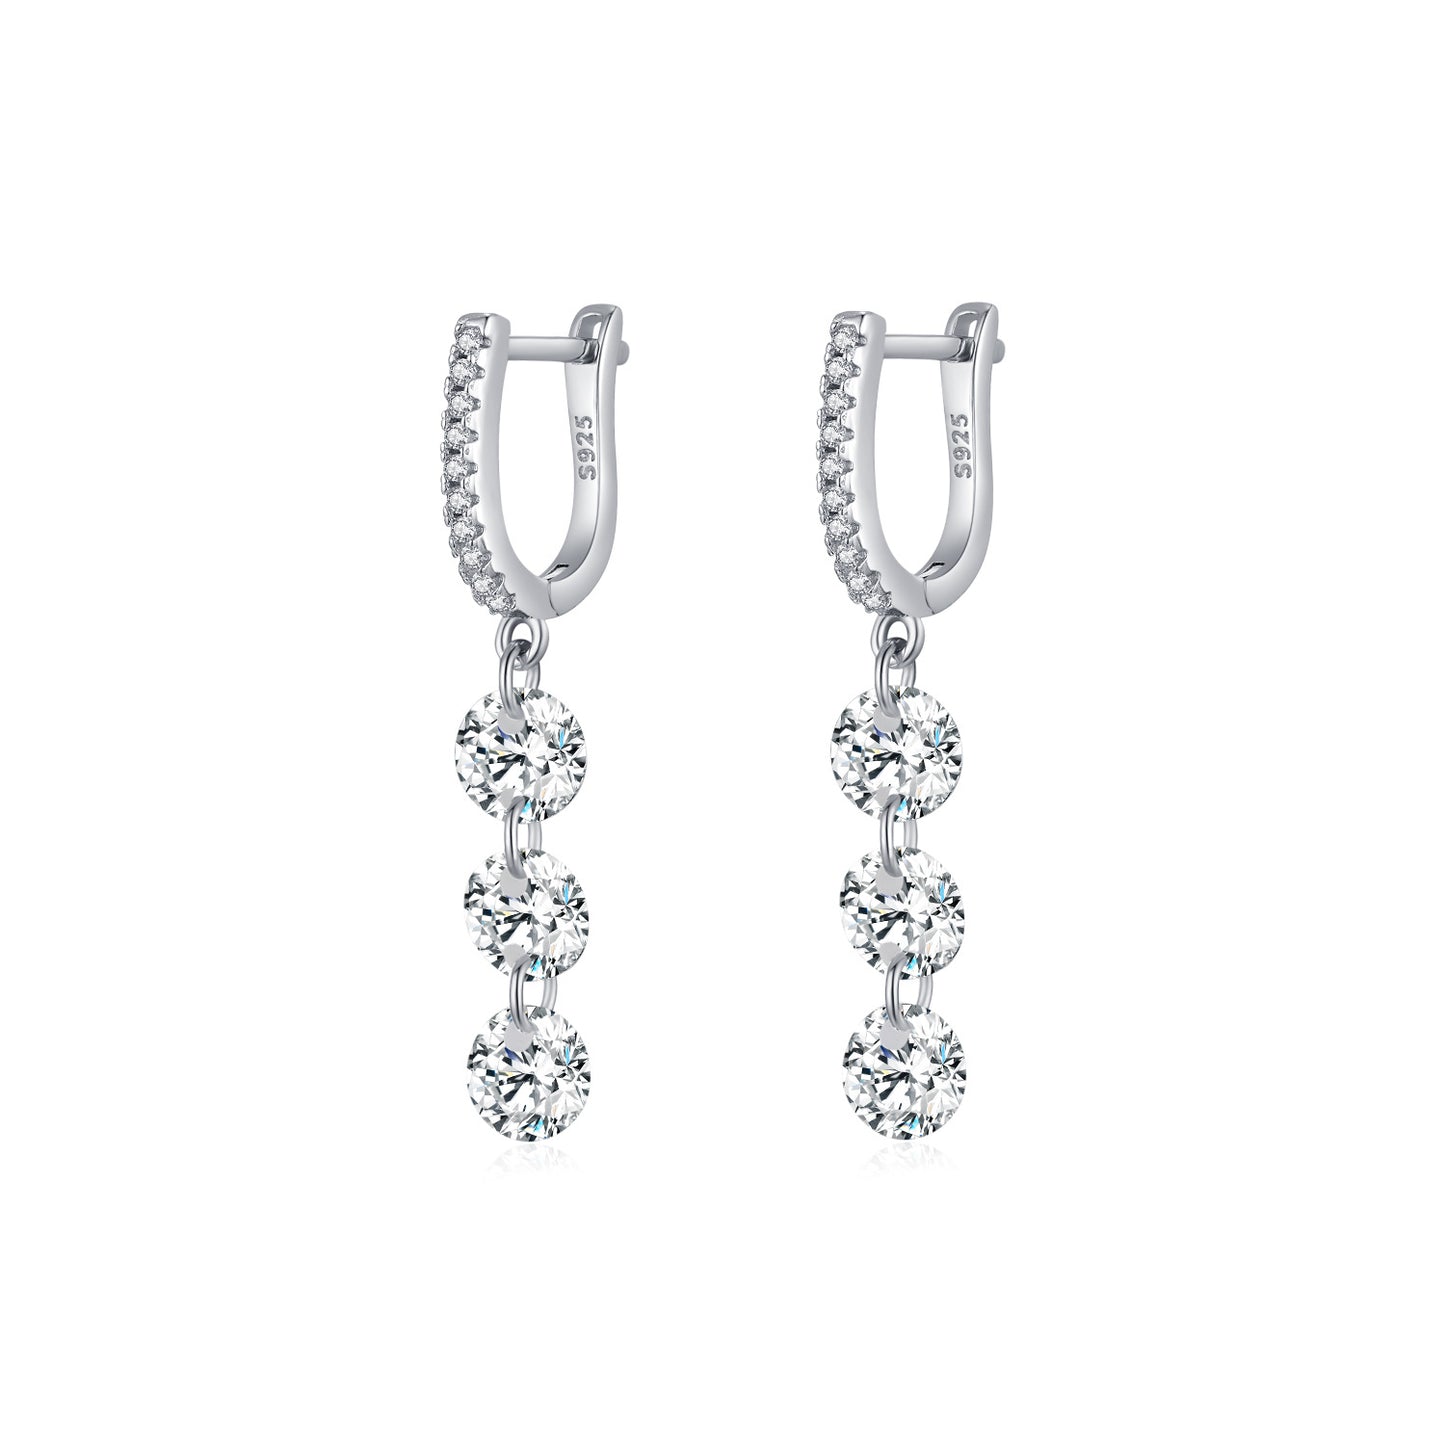 Luxury Sterling Silver Tassel Pendant Earrings with Zircon